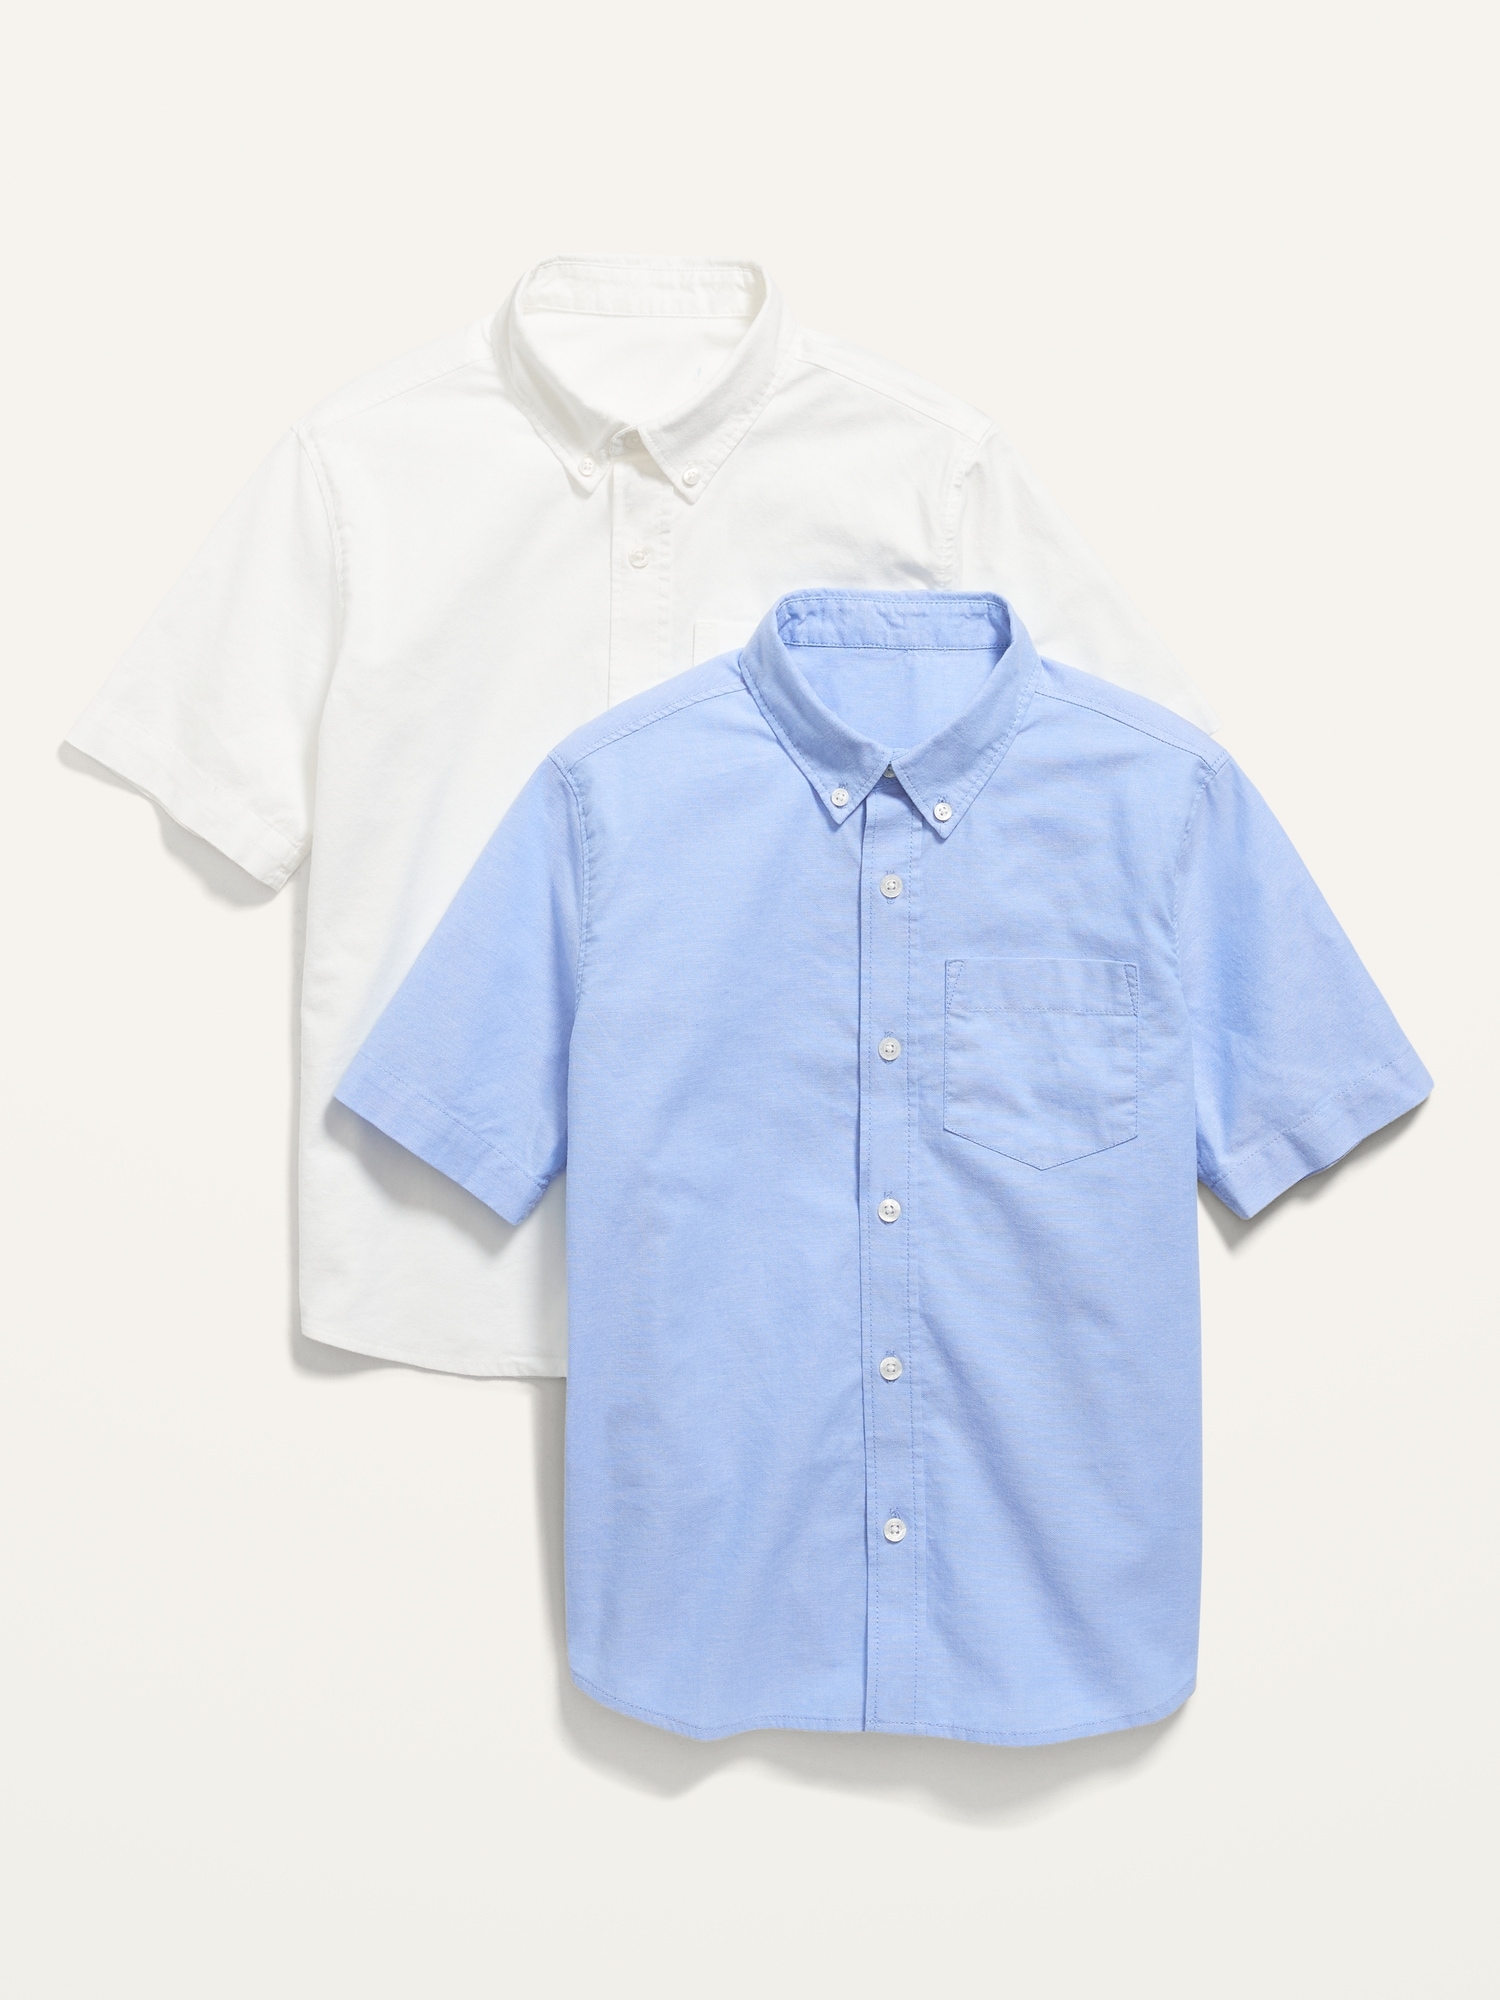 Lightweight Built-In Flex Oxford Uniform Shirt 2-Pack for Boys Hot Deal